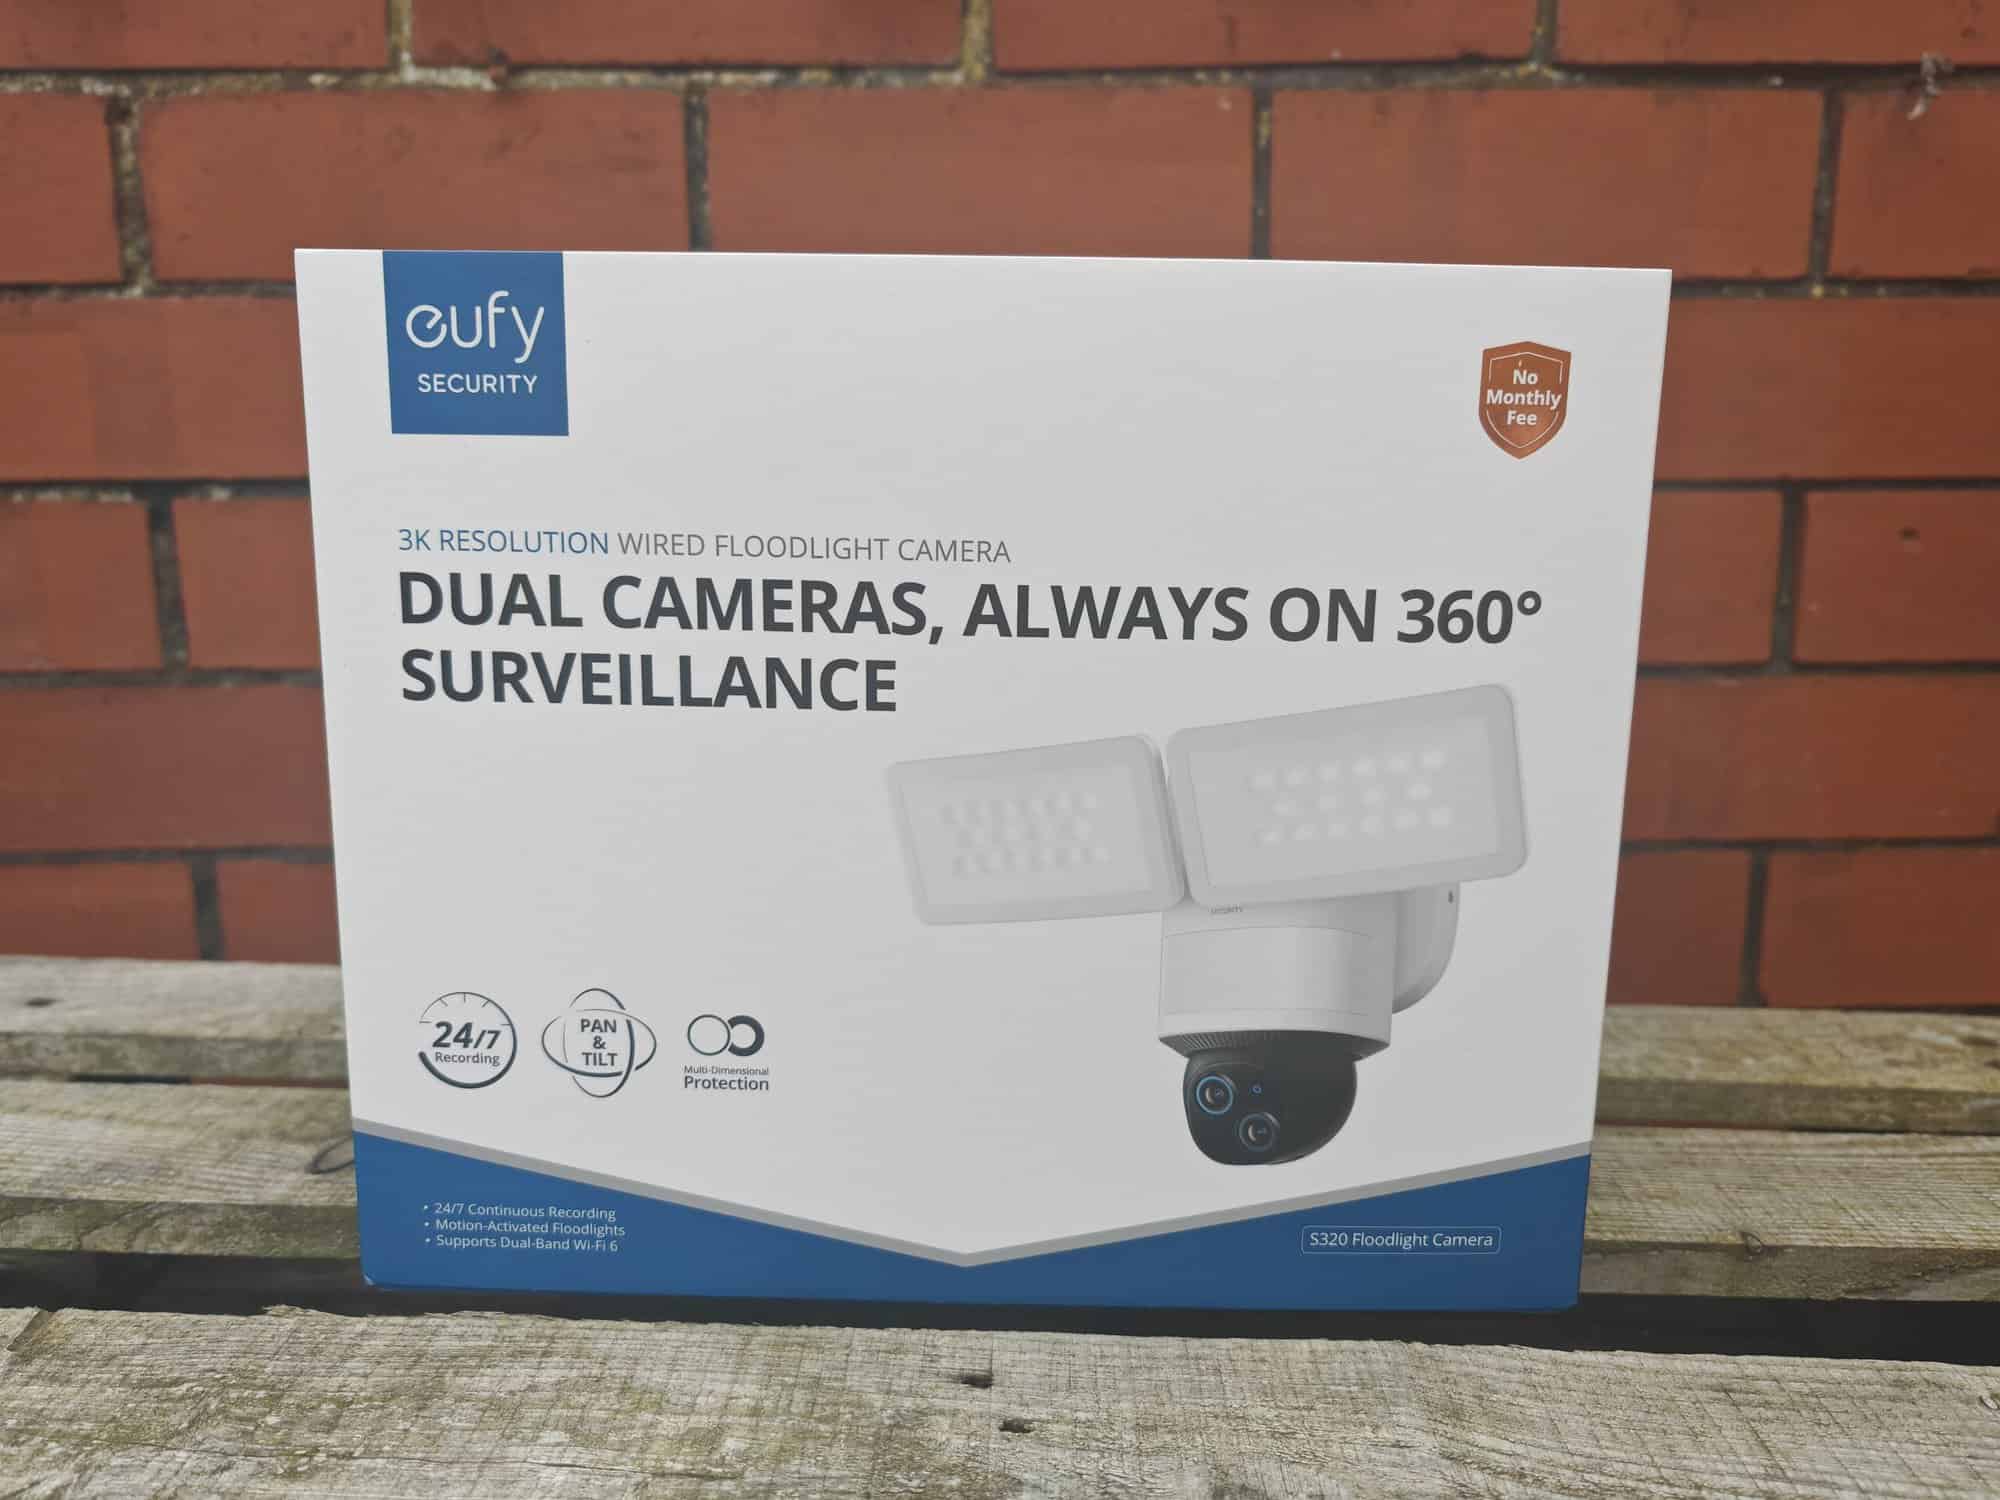 Eufy Floodlight Camera E340 Review vs S330 Floodlight Cam 2 Pro